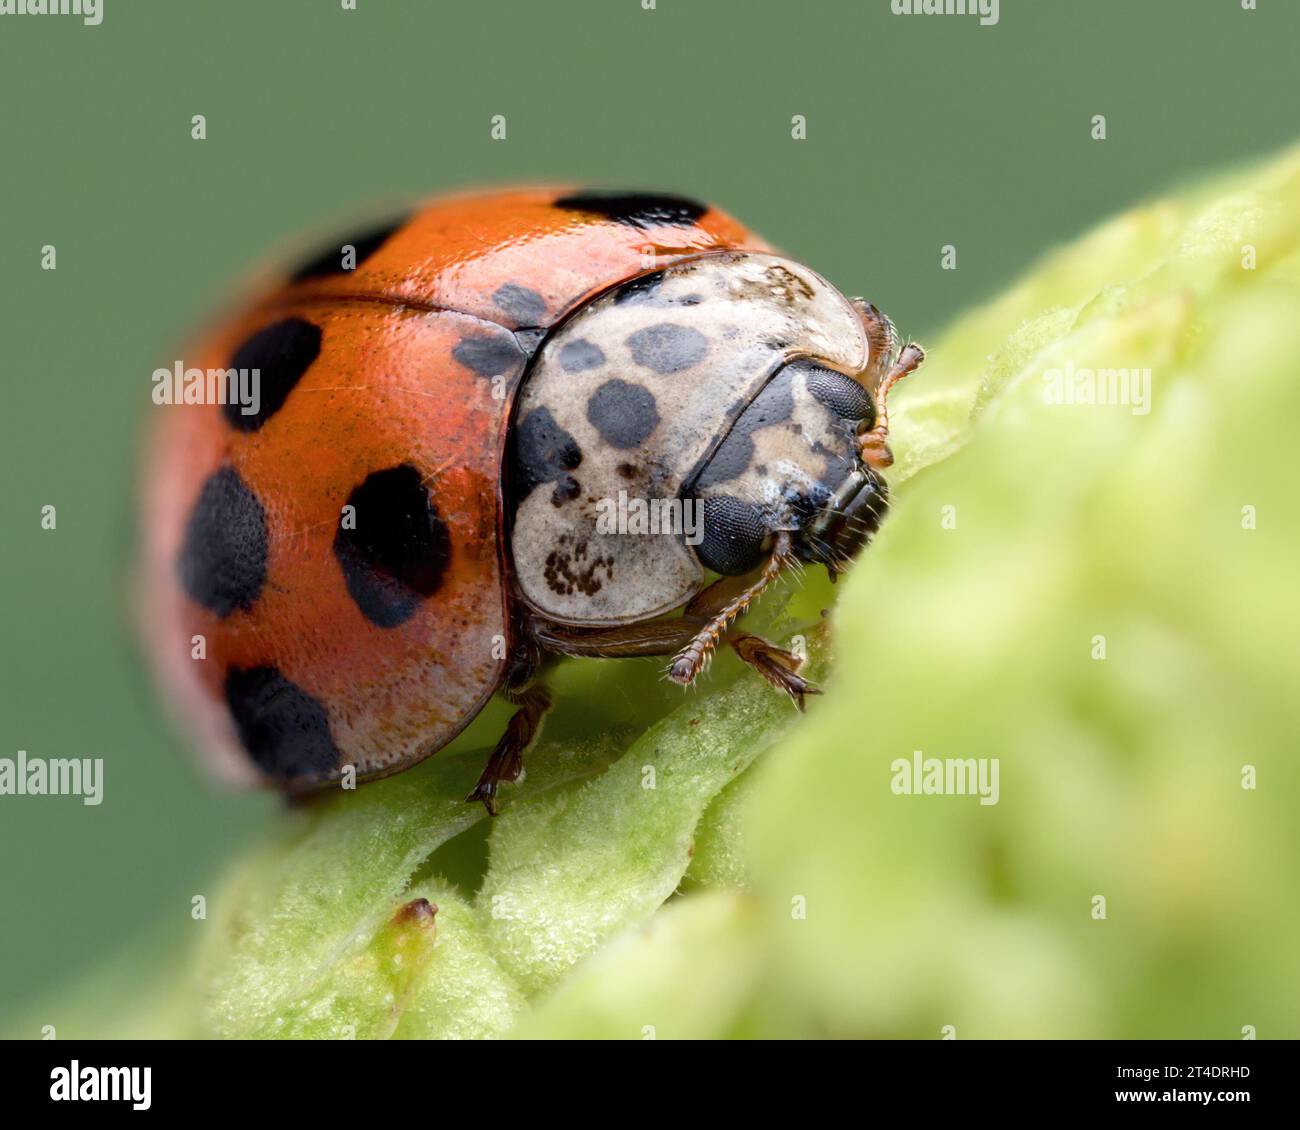 10 spots Ladybird (Adalia decempunctata) sur pomme de pin. Tipperary, Irlande Banque D'Images